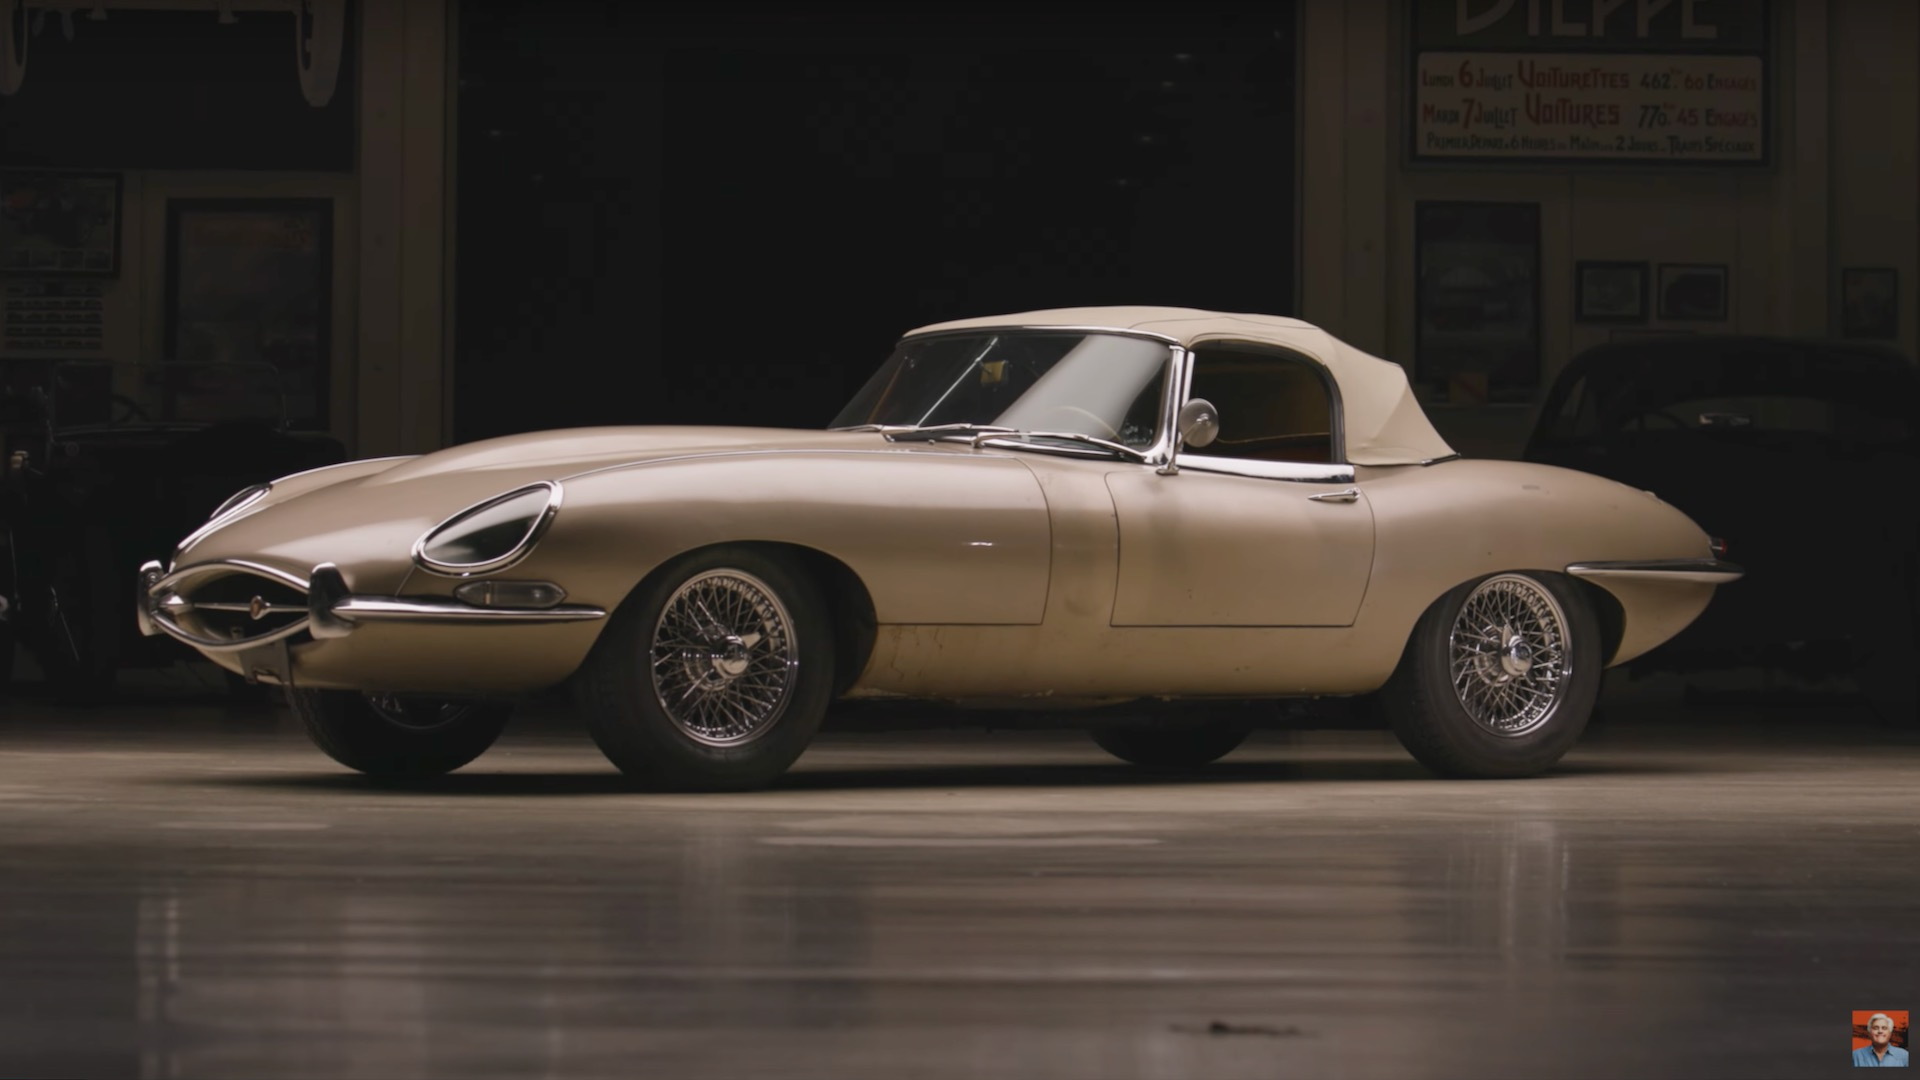 1963 Jaguar E-Type on Jay Leno's Garage